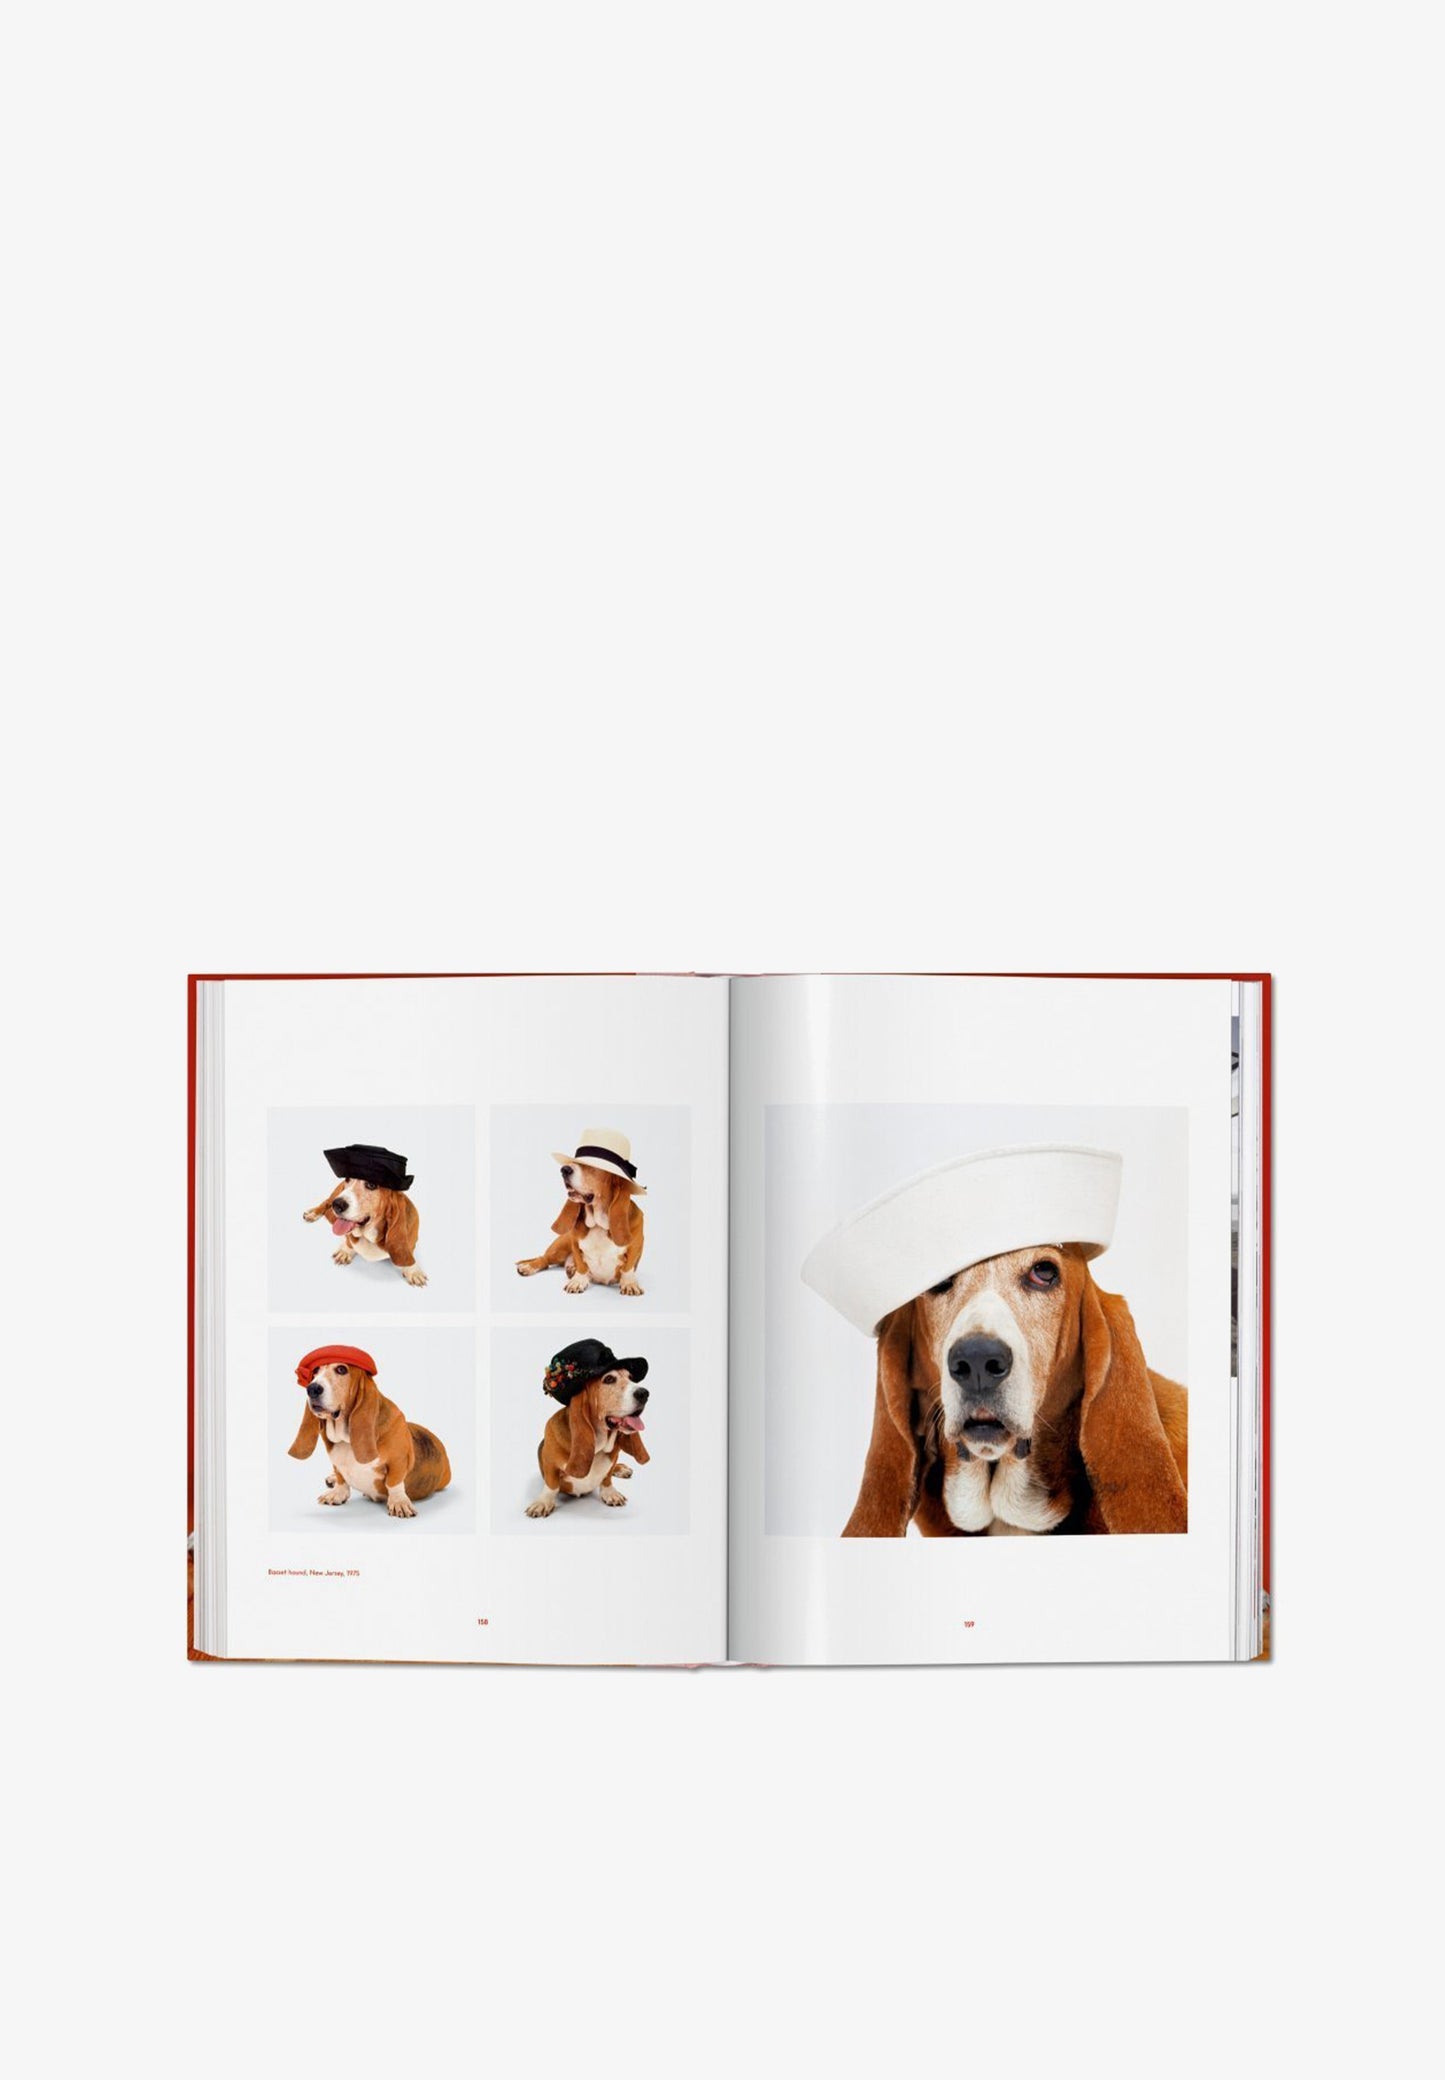 TASCHEN | LIVRO WALTER CHANDOHA DOGS